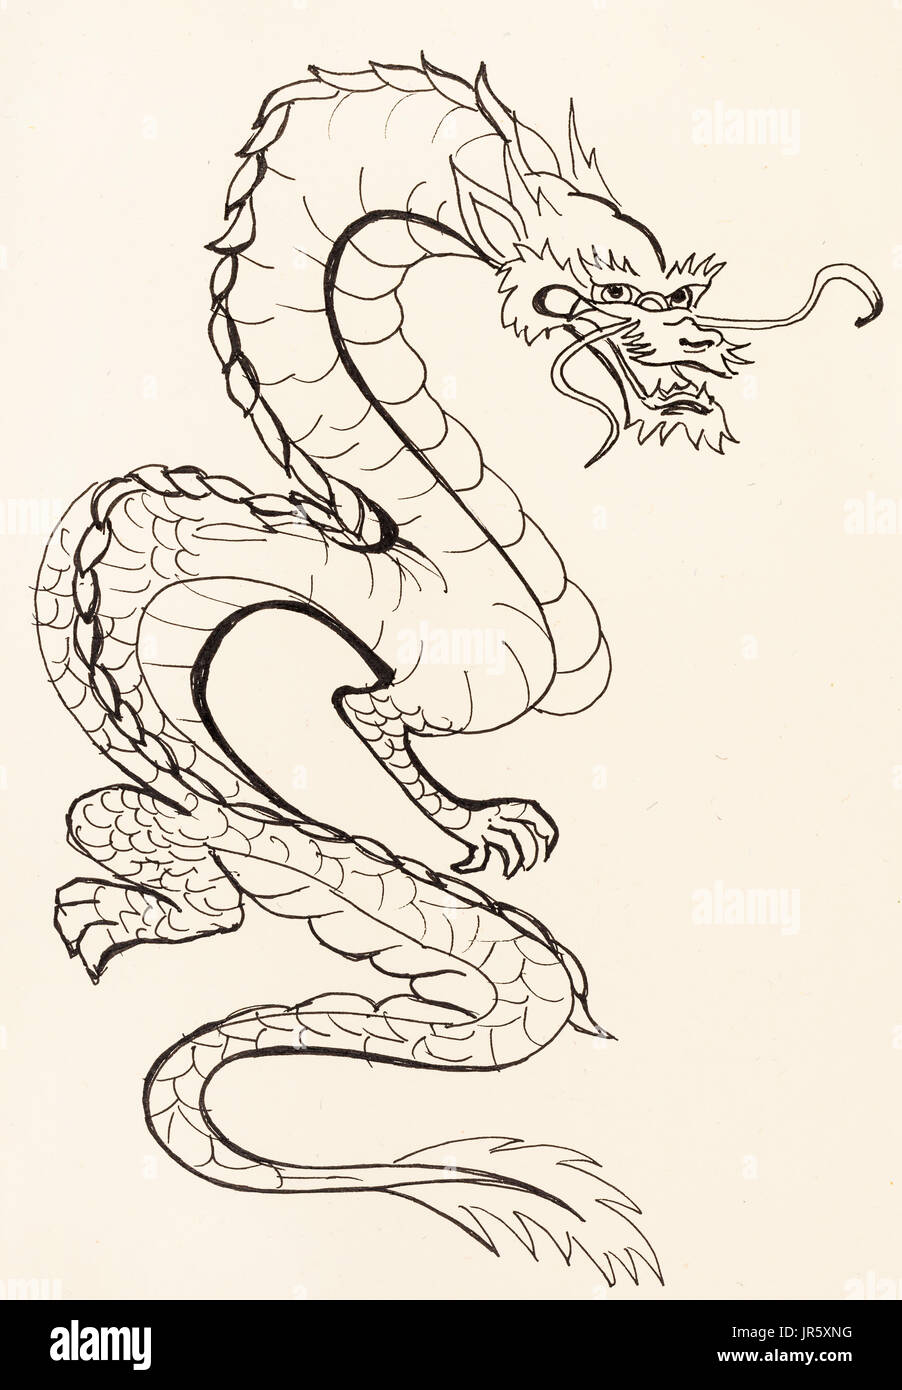 La formation en dessin suibokuga with style - dragon sur papier couleur ivoire Banque D'Images